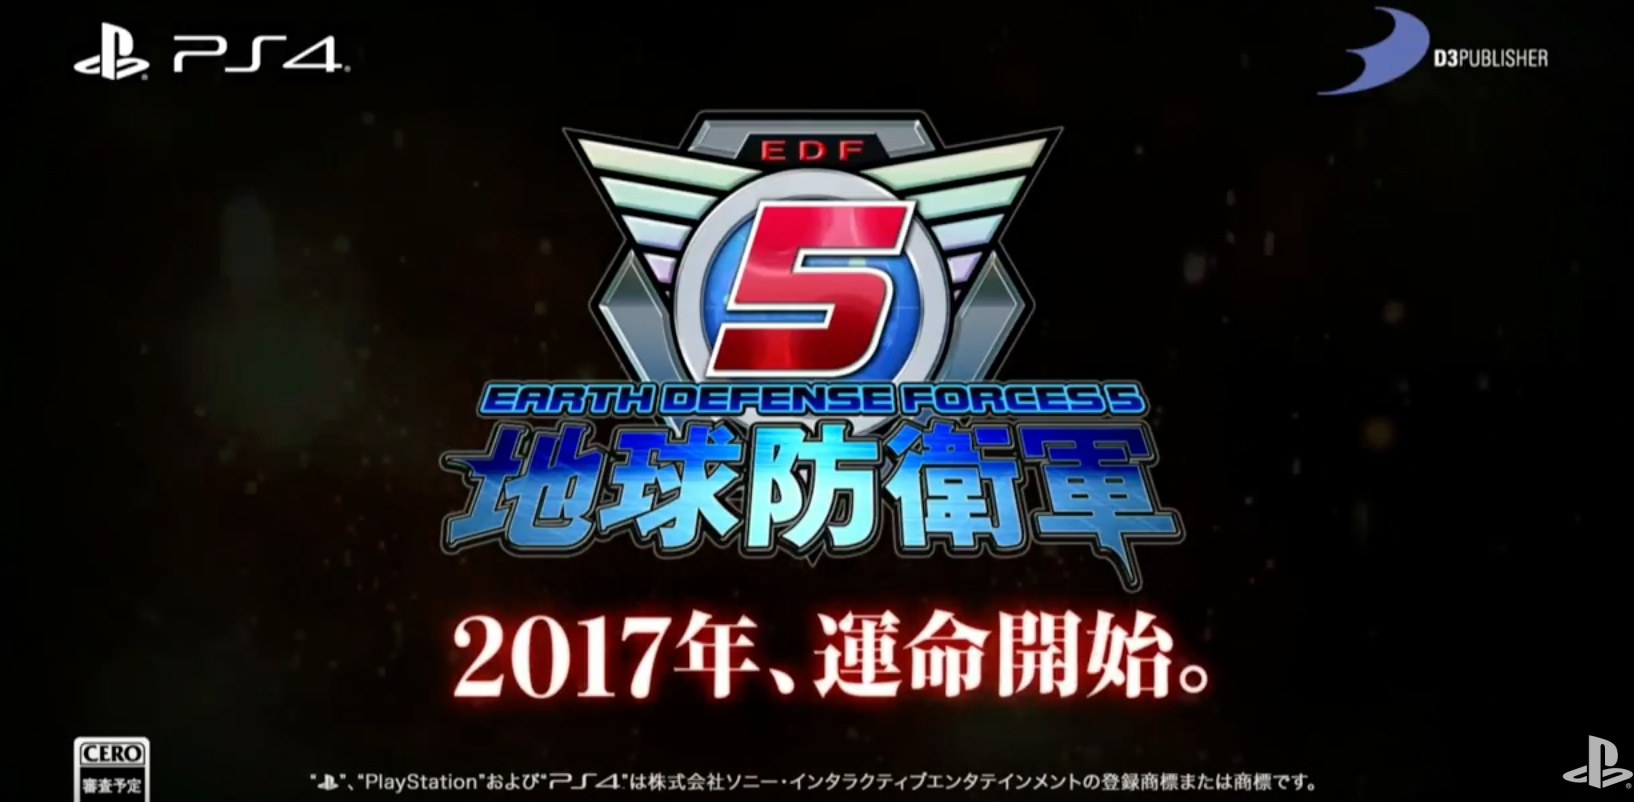 [TGS 2016] Earth Defense Force 5 annoncé sur PS4